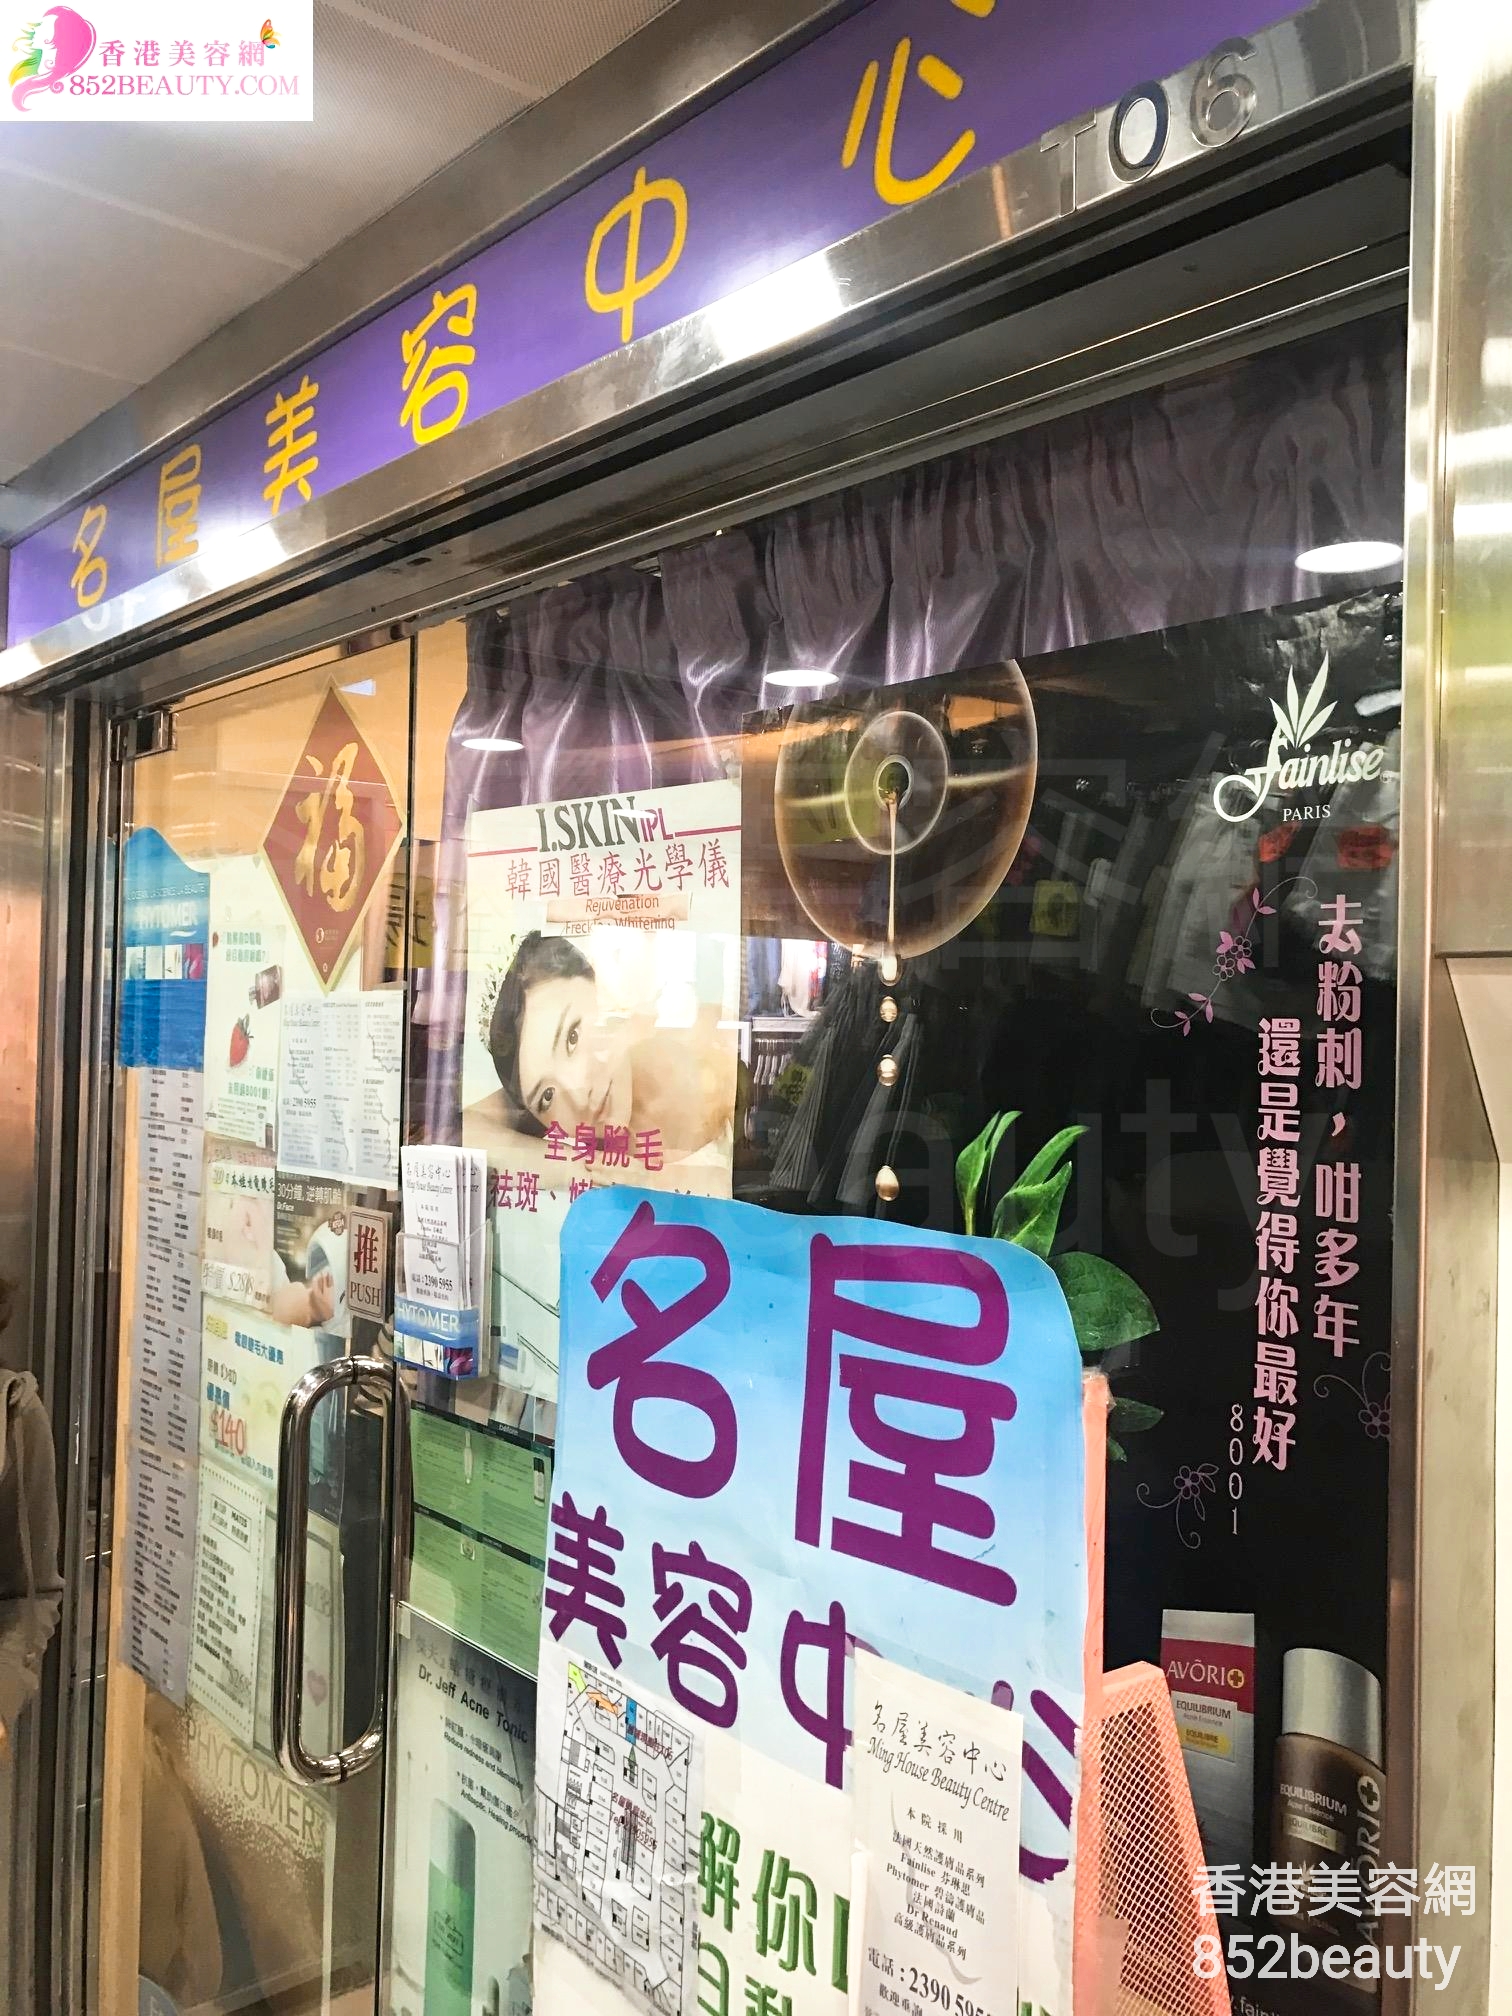 香港美容網 Hong Kong Beauty Salon 美容院 / 美容師: 名屋美容中心